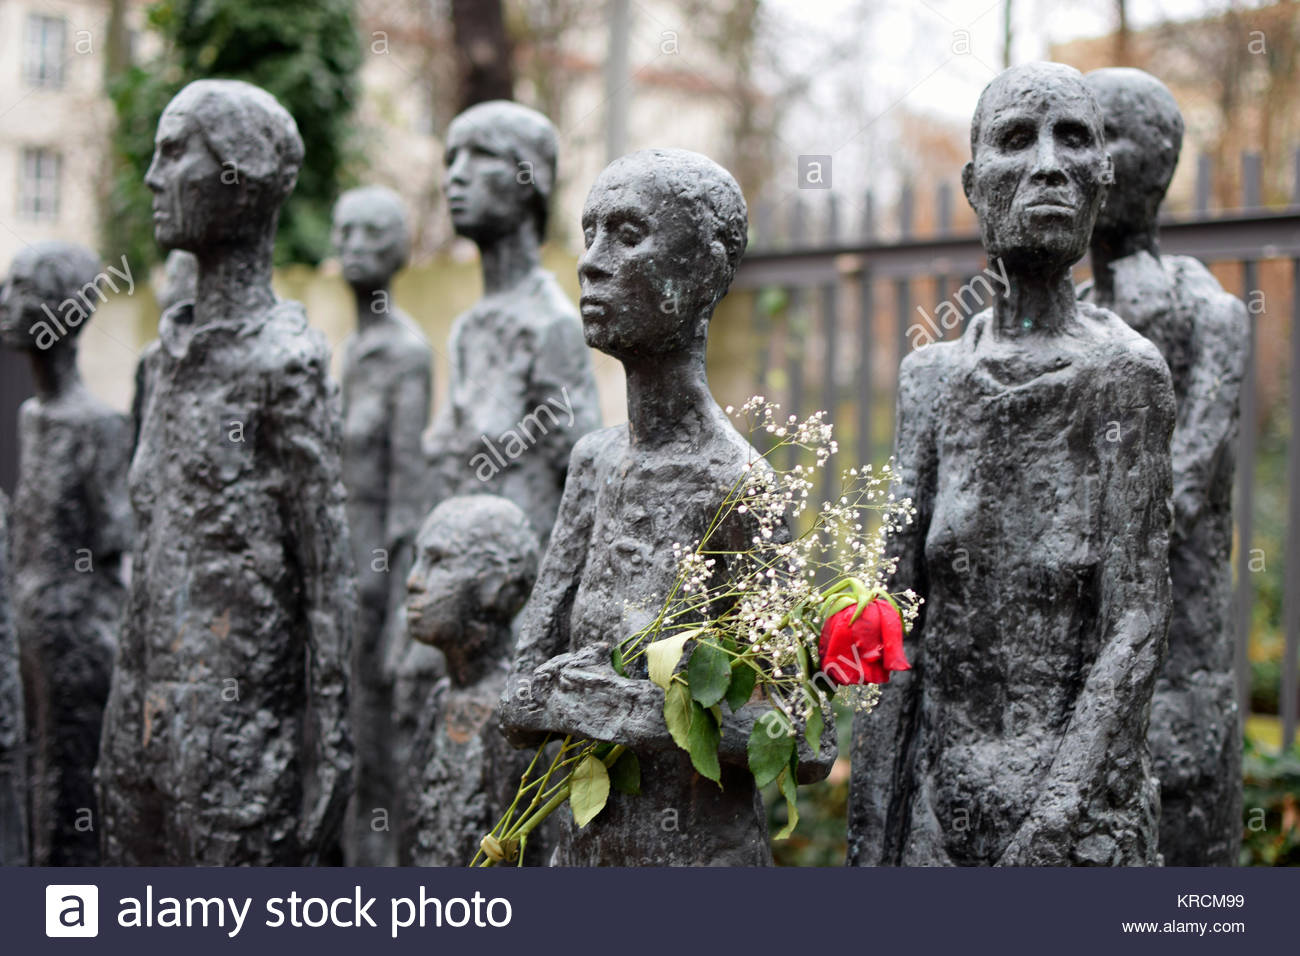 Berlín, monumento al Holocausto judío, en el exterior del cementerio judío